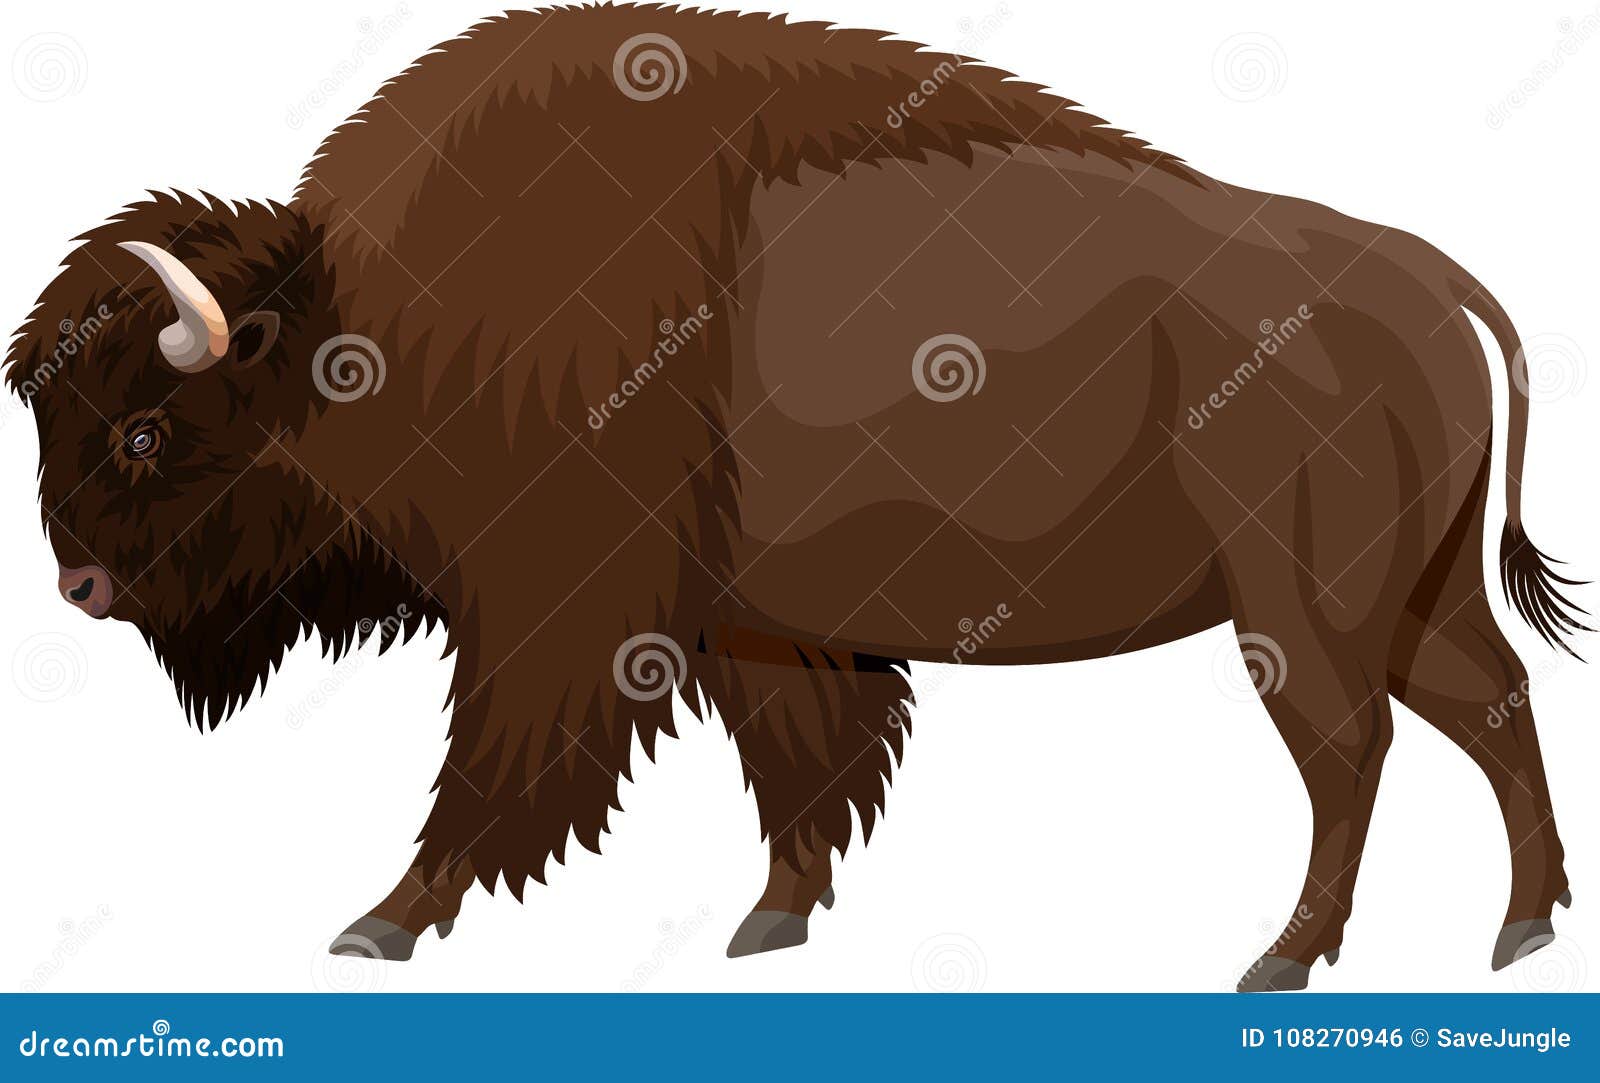  brown zubr buffalo bison